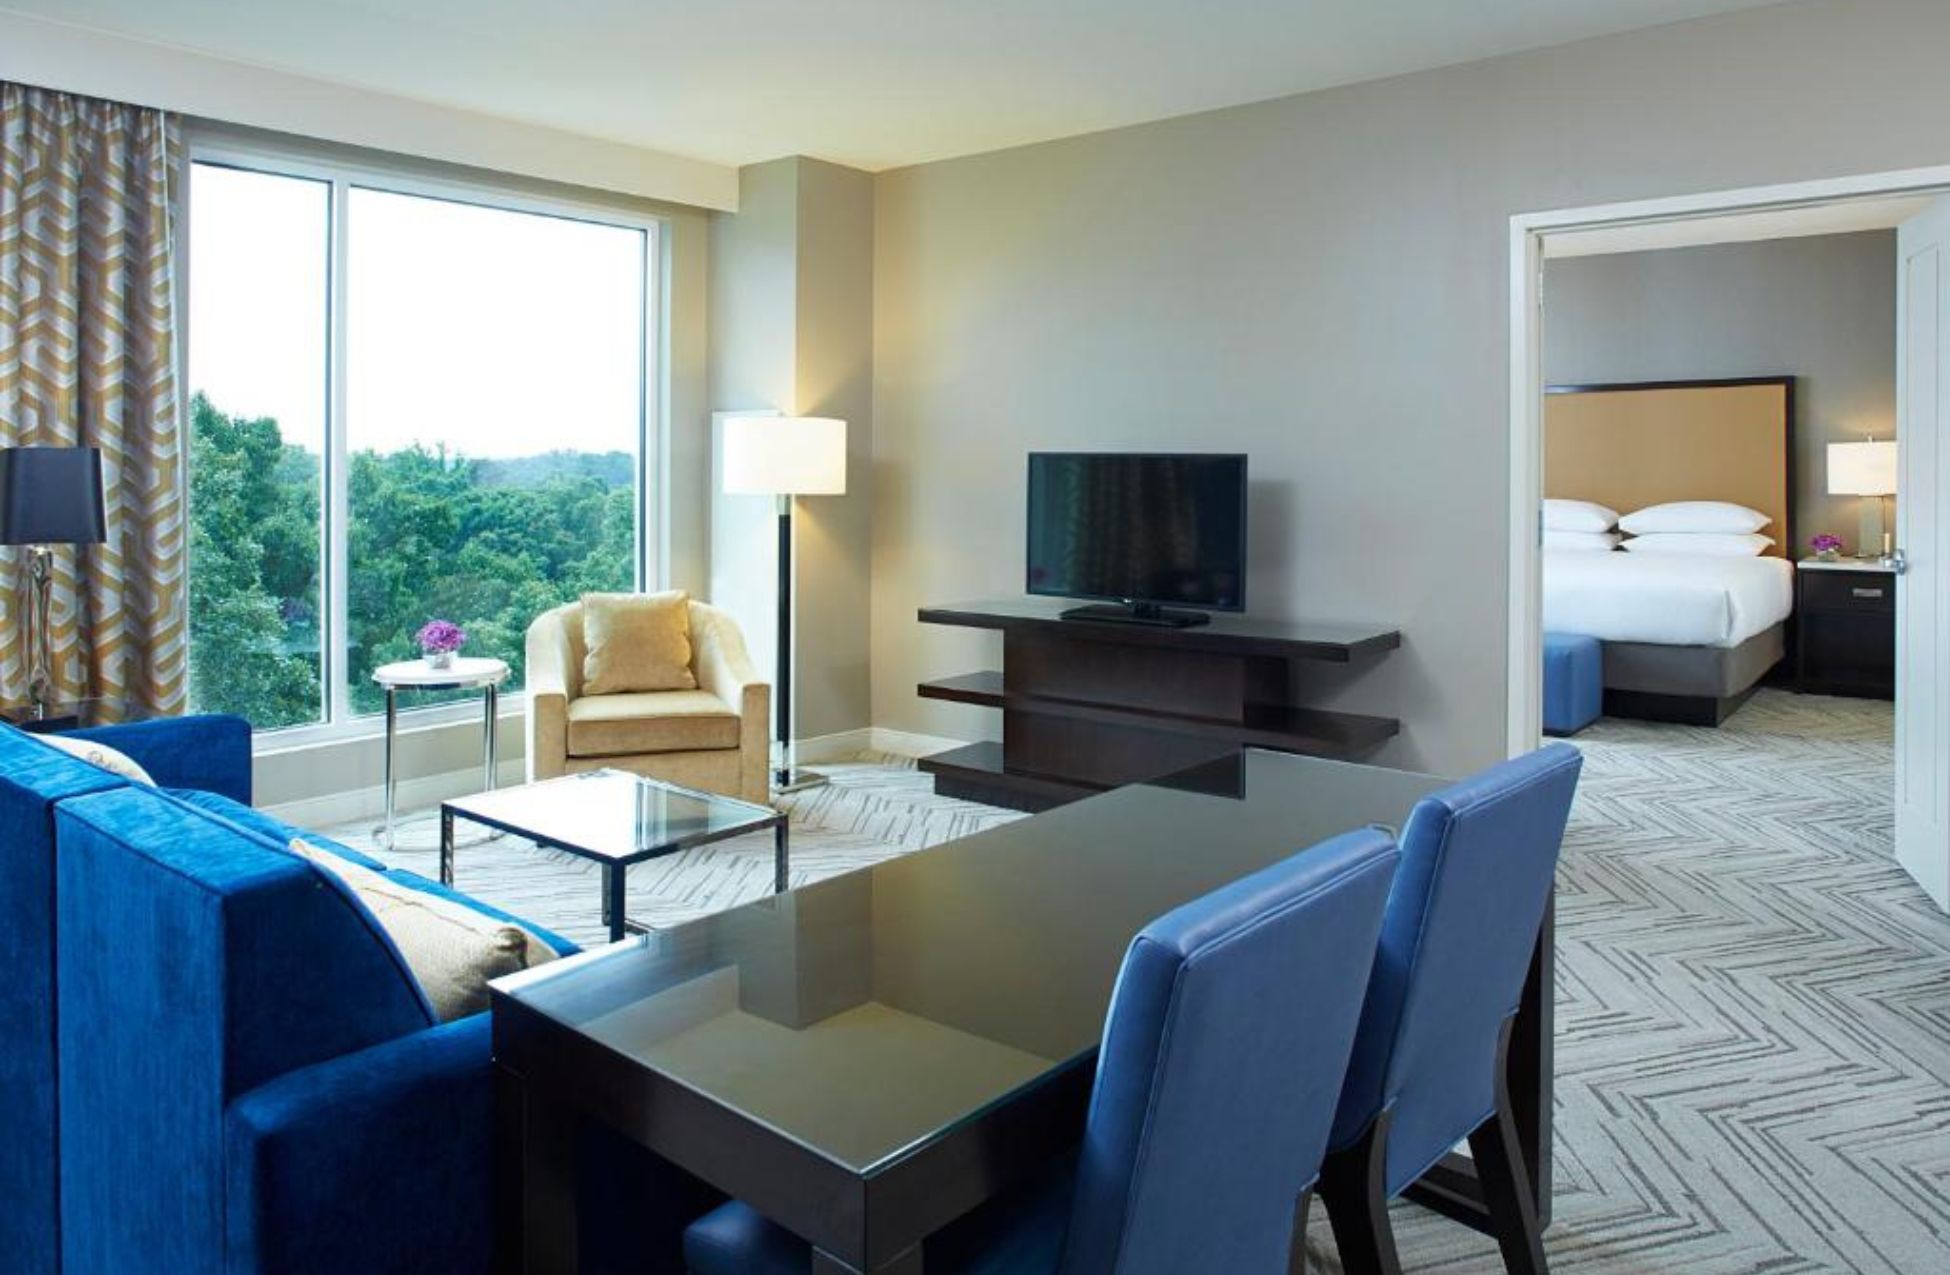 Hyatt Regency Atlanta Perimeter At Villa Christina - Best Hotels In Atlanta